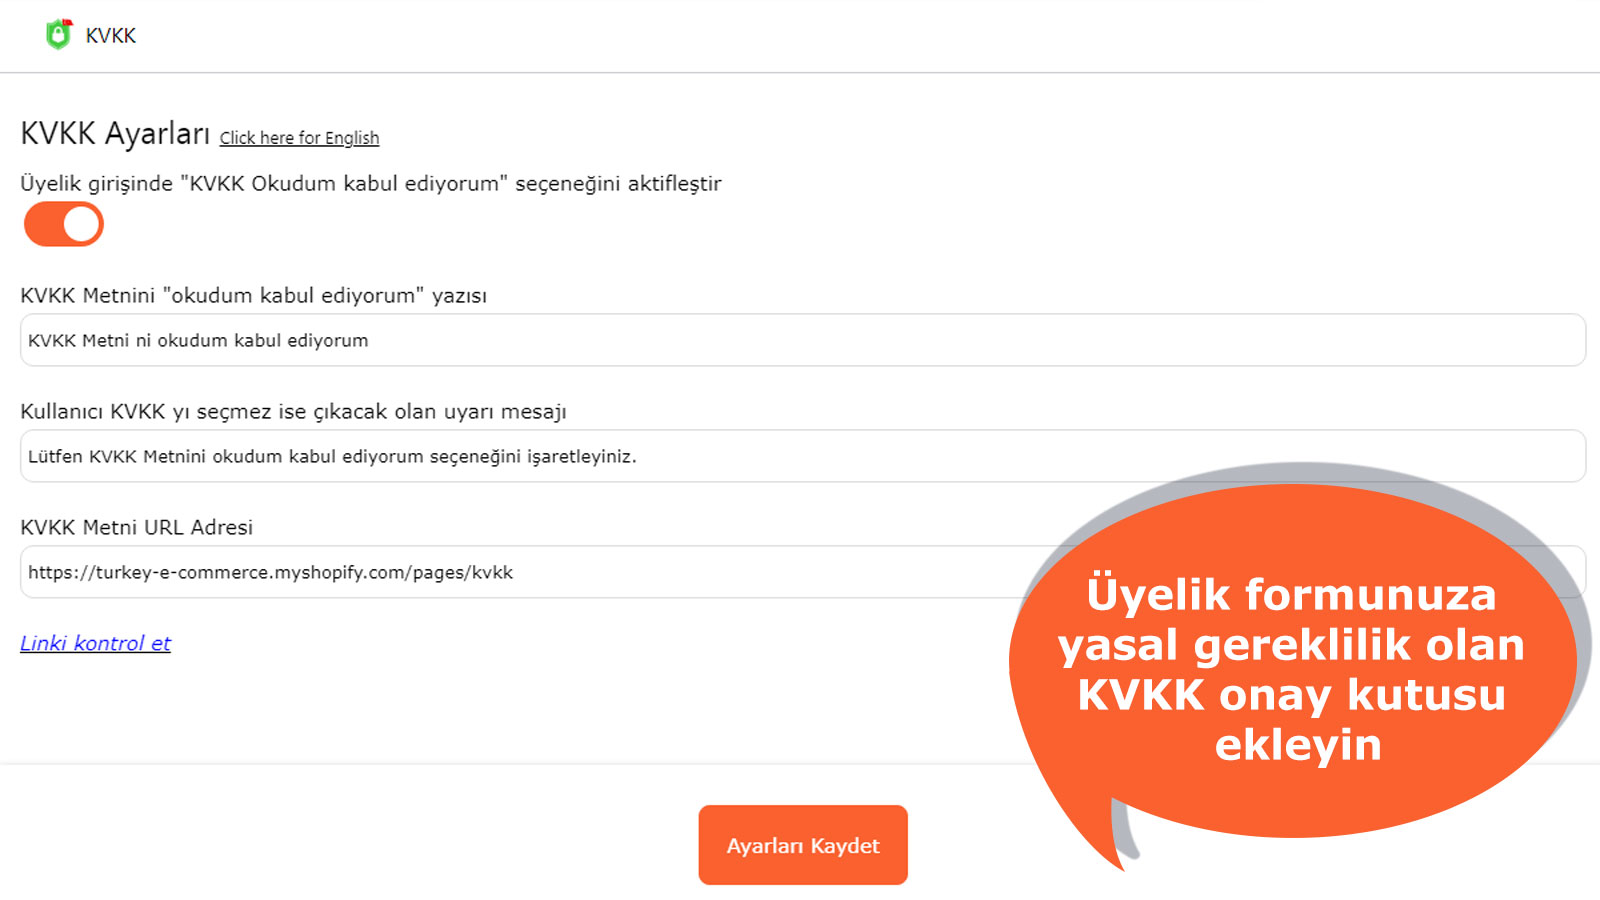 Sitenize yasal gereklilik olan KVKK onay kutusu ekleyin